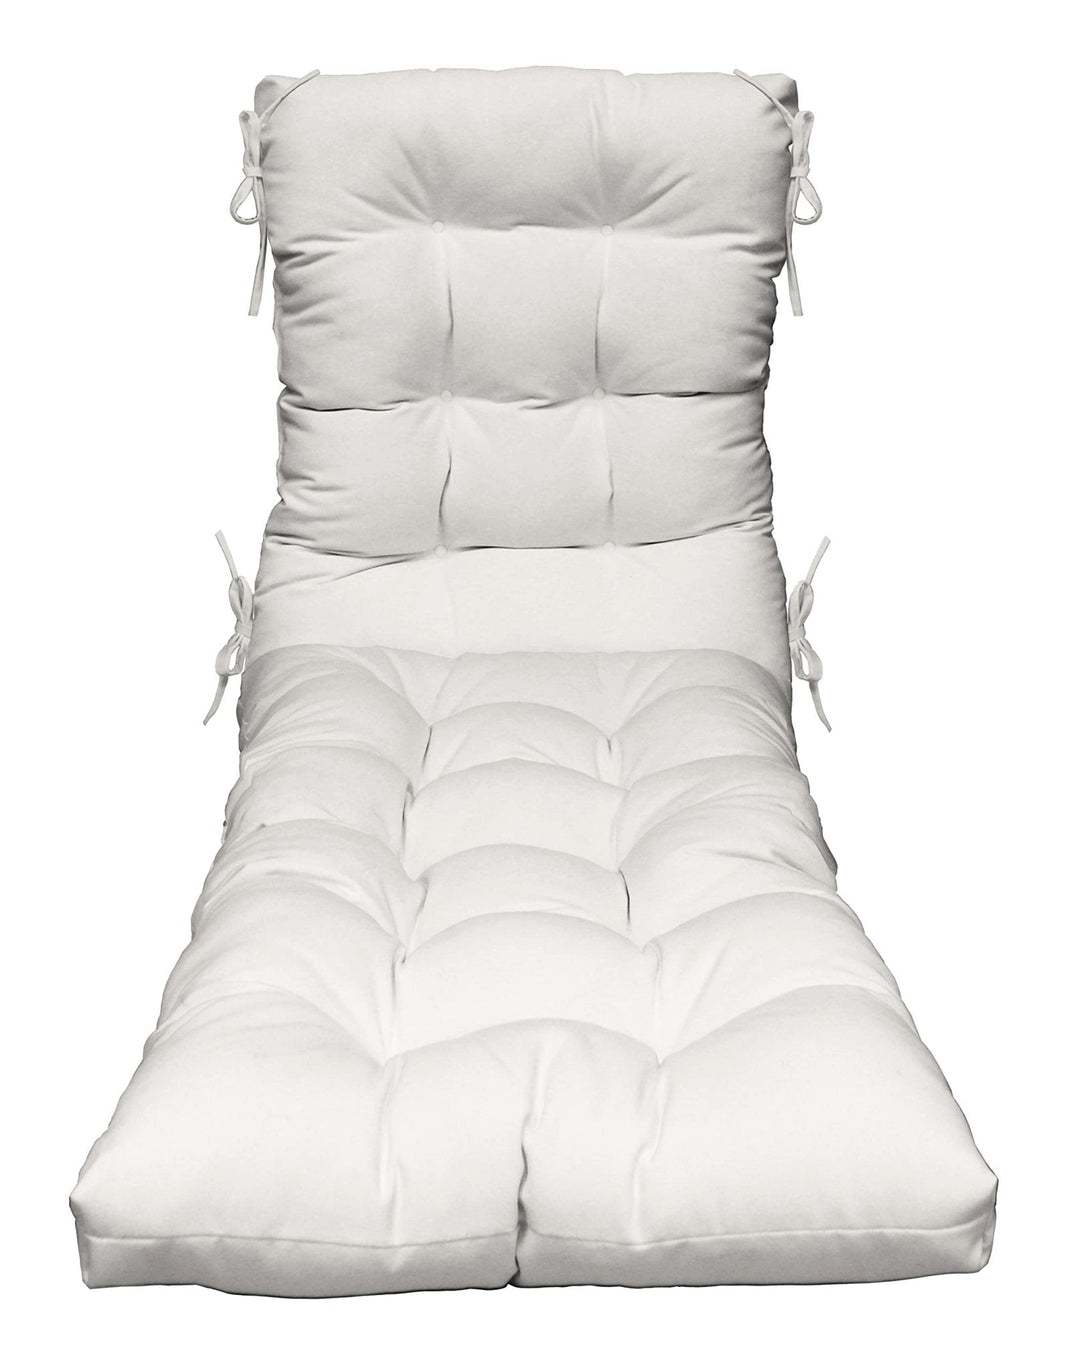 Chaise Lounge Chair Cushion | Tufted | 72" H x 22" W | Sunbrella Canvas White - RSH Decor